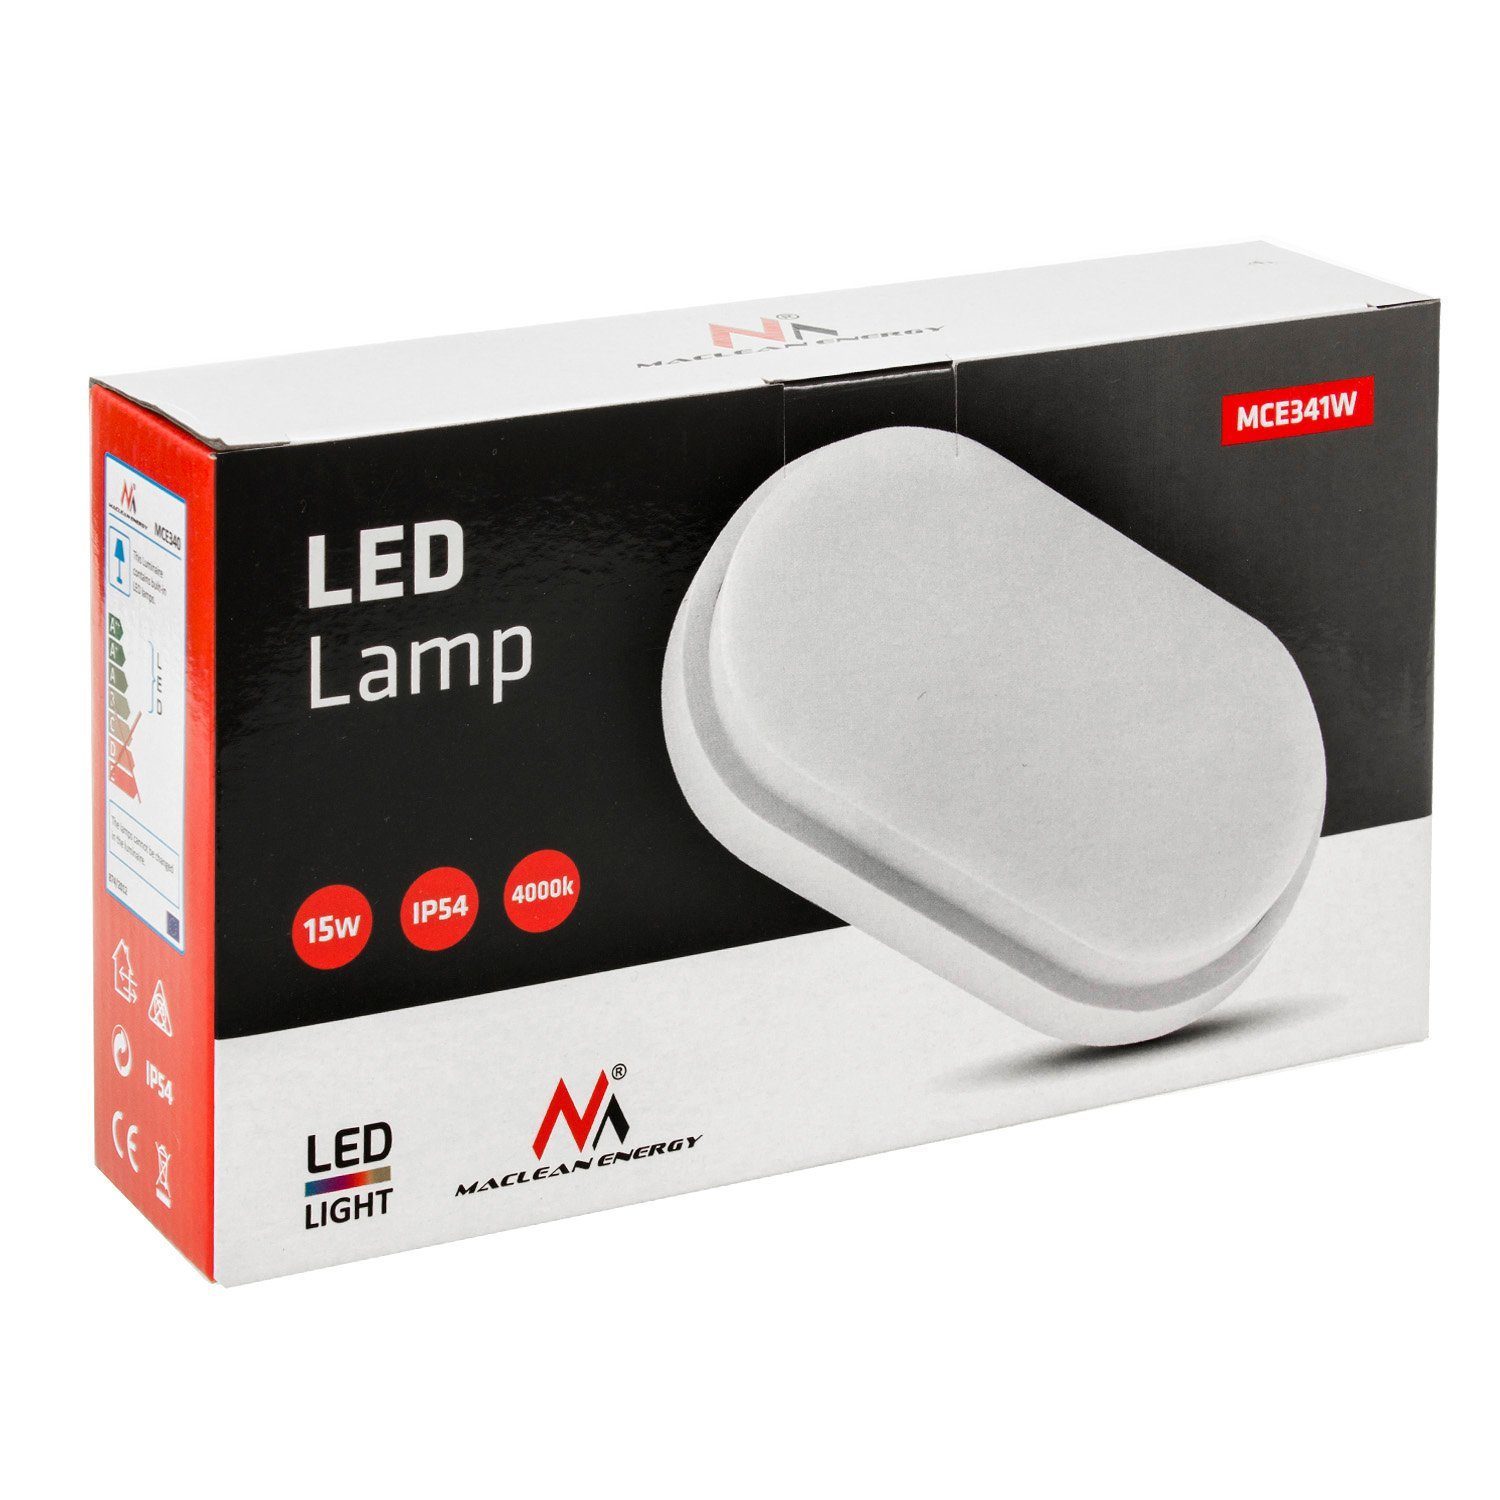 Maclean LED Deckenleuchte MCE341, grau/weiß 1100lm und Wand- 15W Deckenleuchte LED IP54